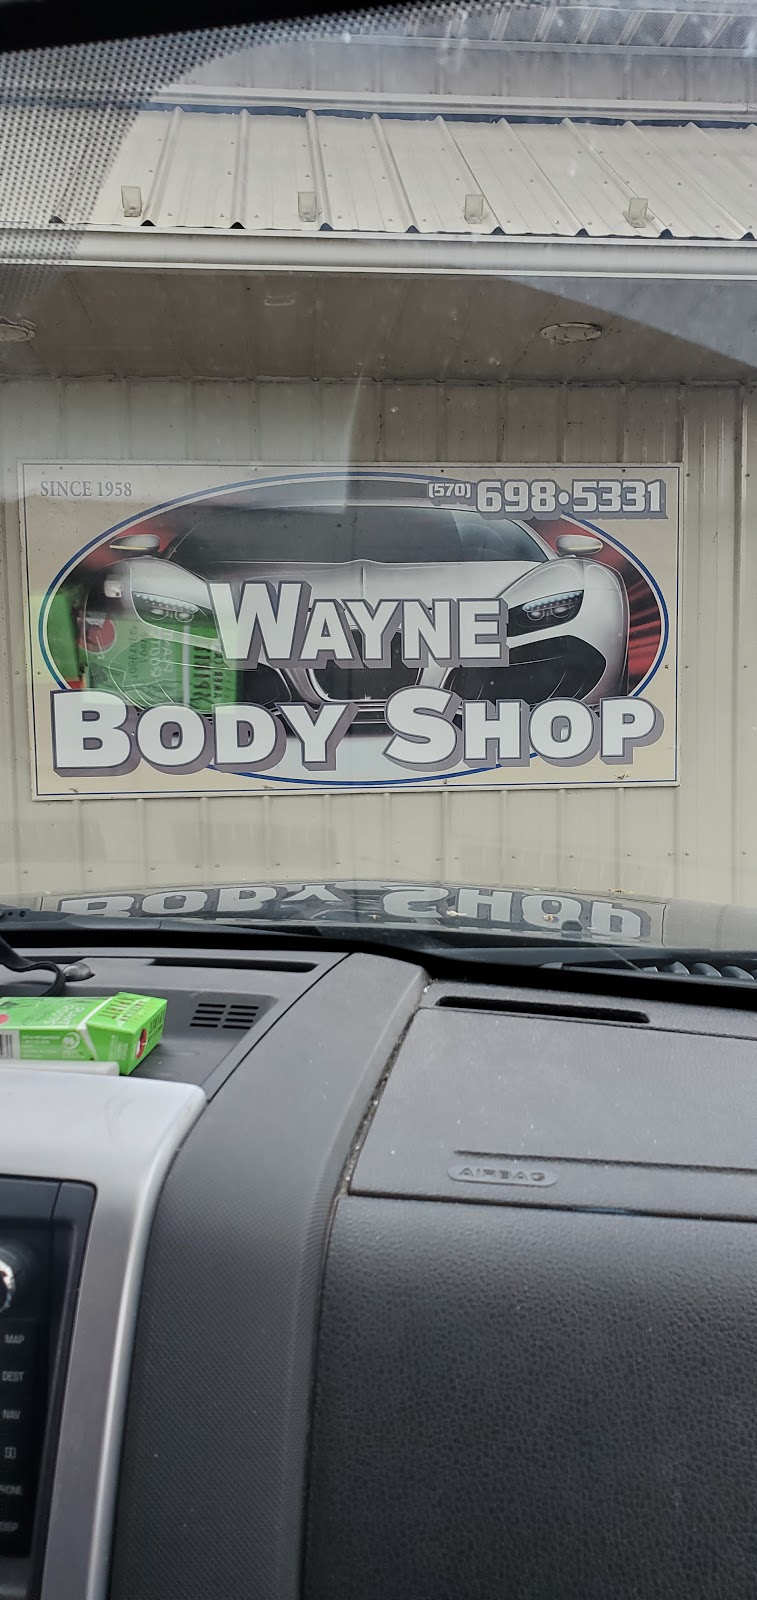 Wayne Body Shop | 1419 Lake Ariel Hwy, Lake Ariel, PA 18436 | Phone: (570) 698-5331